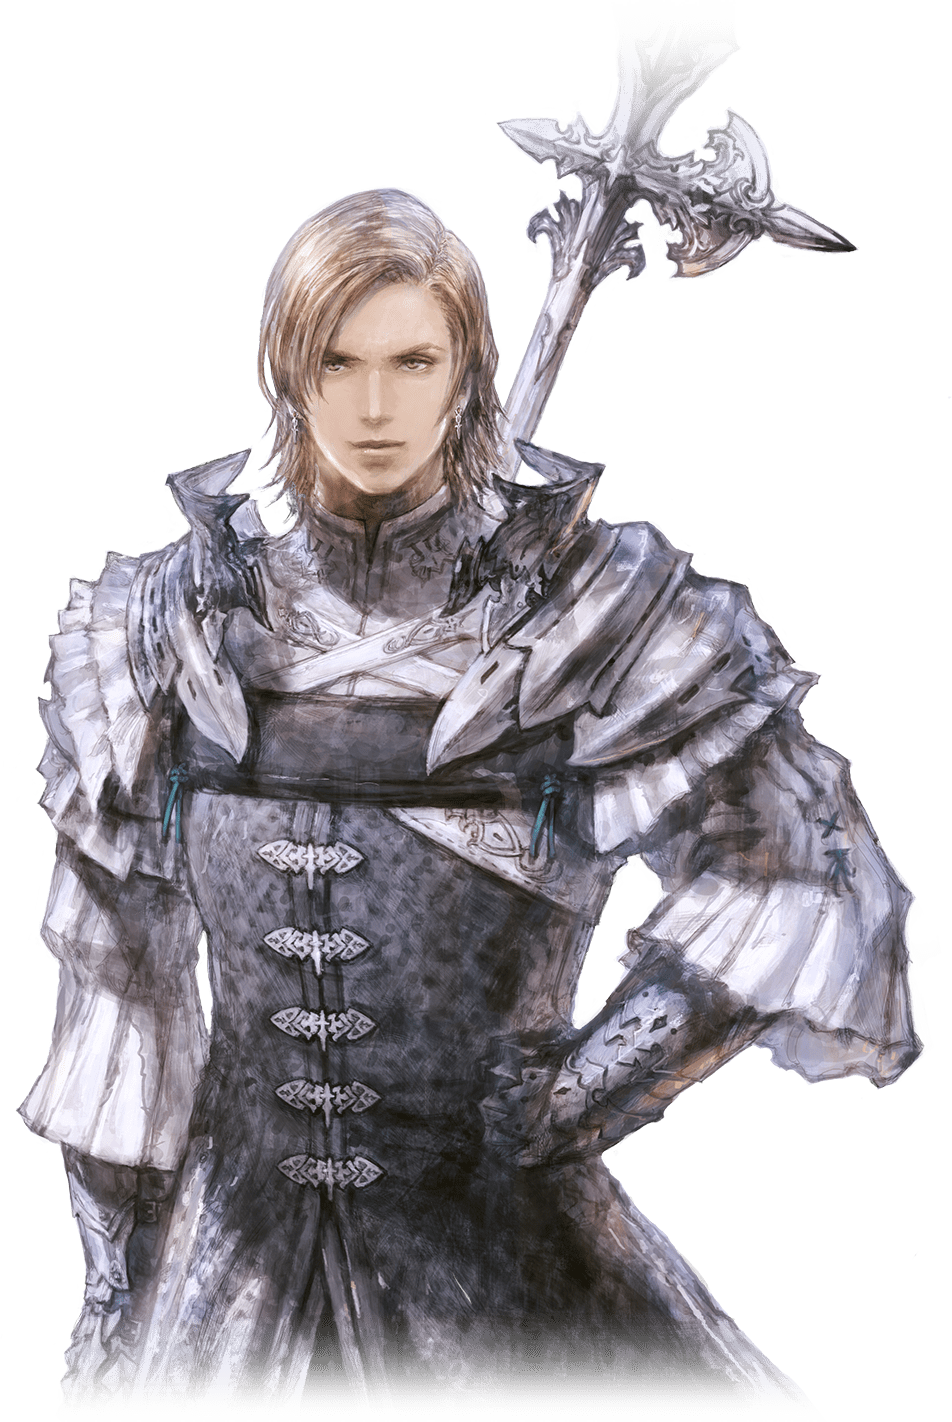 Final Fantasy XVI ‘Ambition’ trailer, screenshots - Gematsu